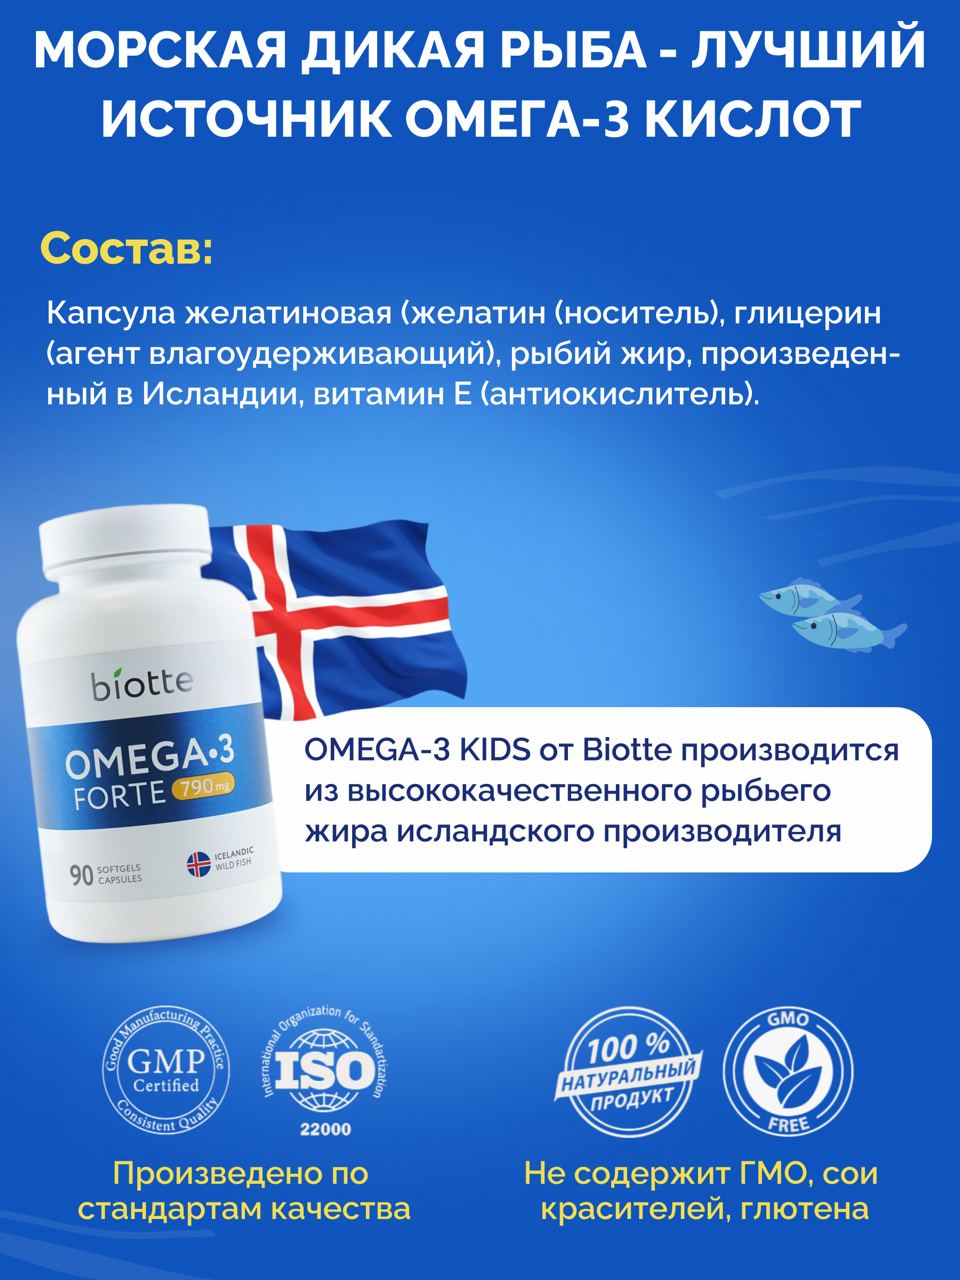 Омега-3 форте BIOTTE 790 mg fish oil премиум рыбий жир для детей подростков взрослых 90 капсул - фото 8